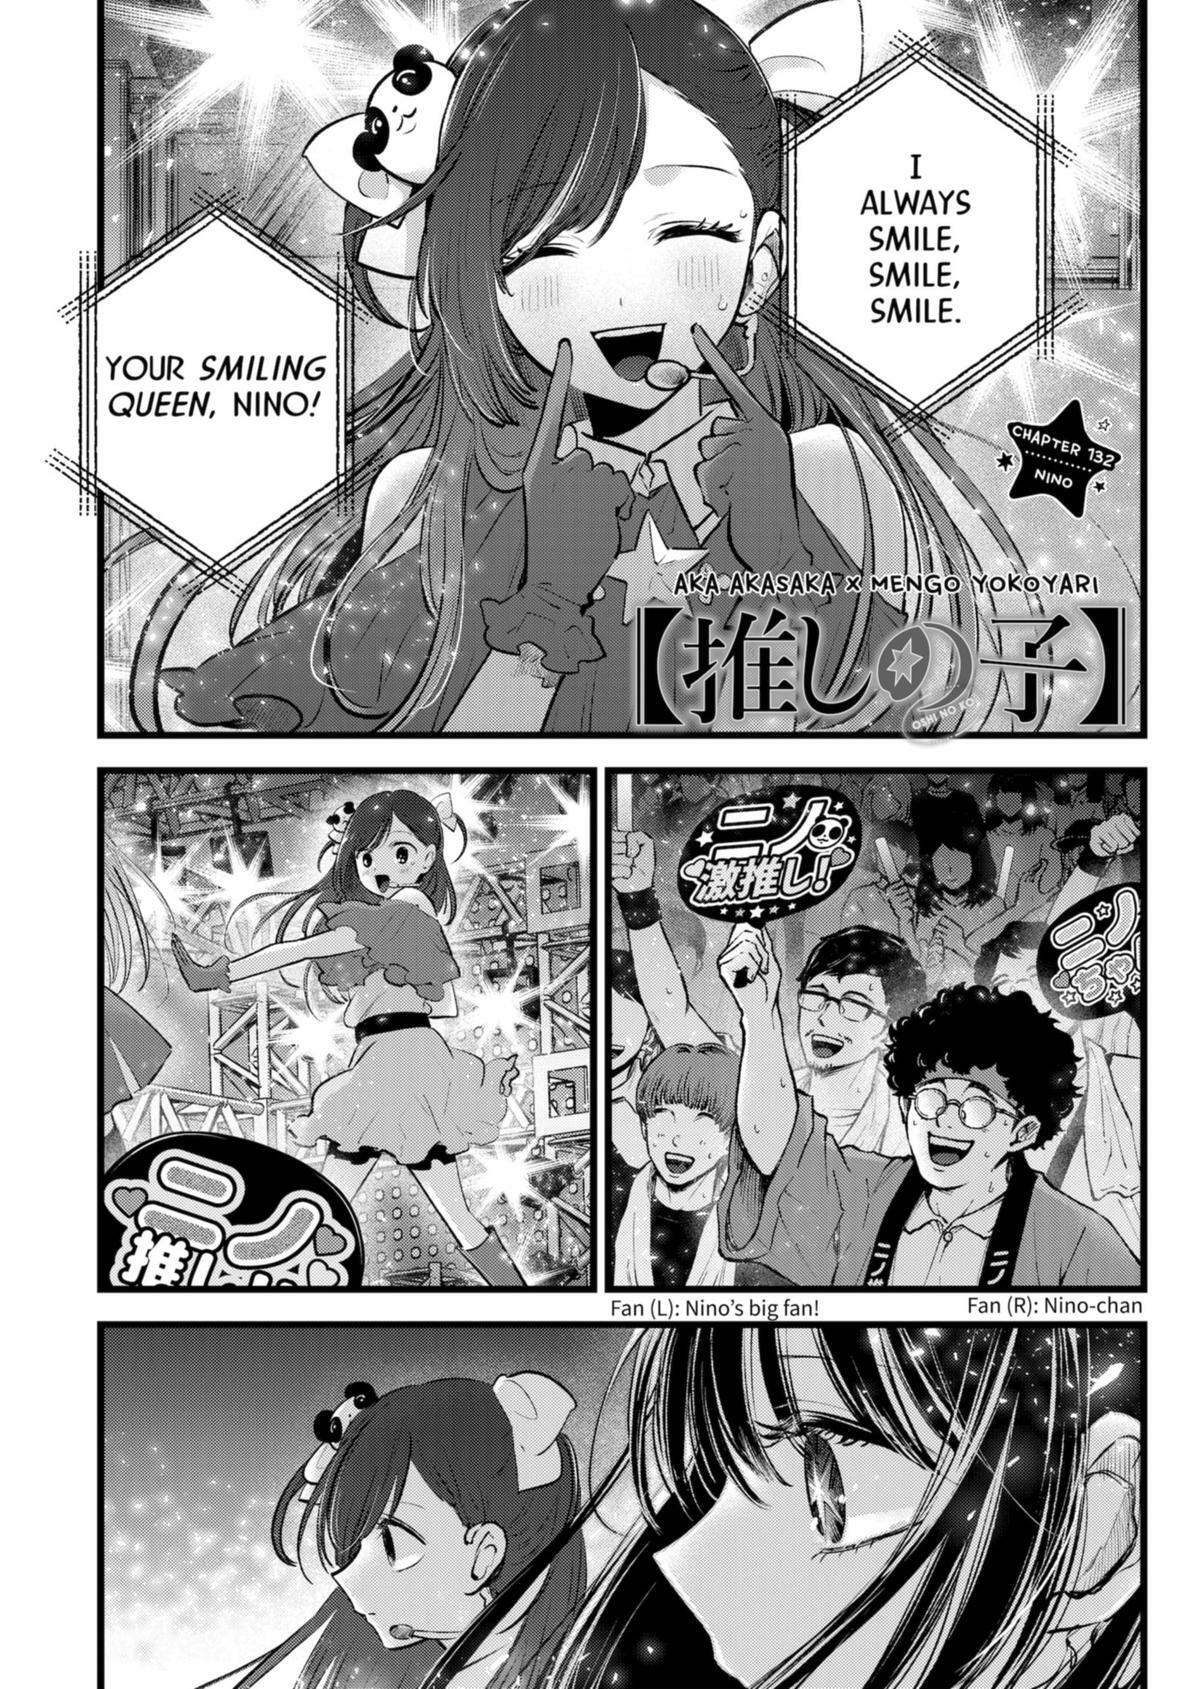 Oshi no ko, Chapter 131 - Oshi no ko Manga Online